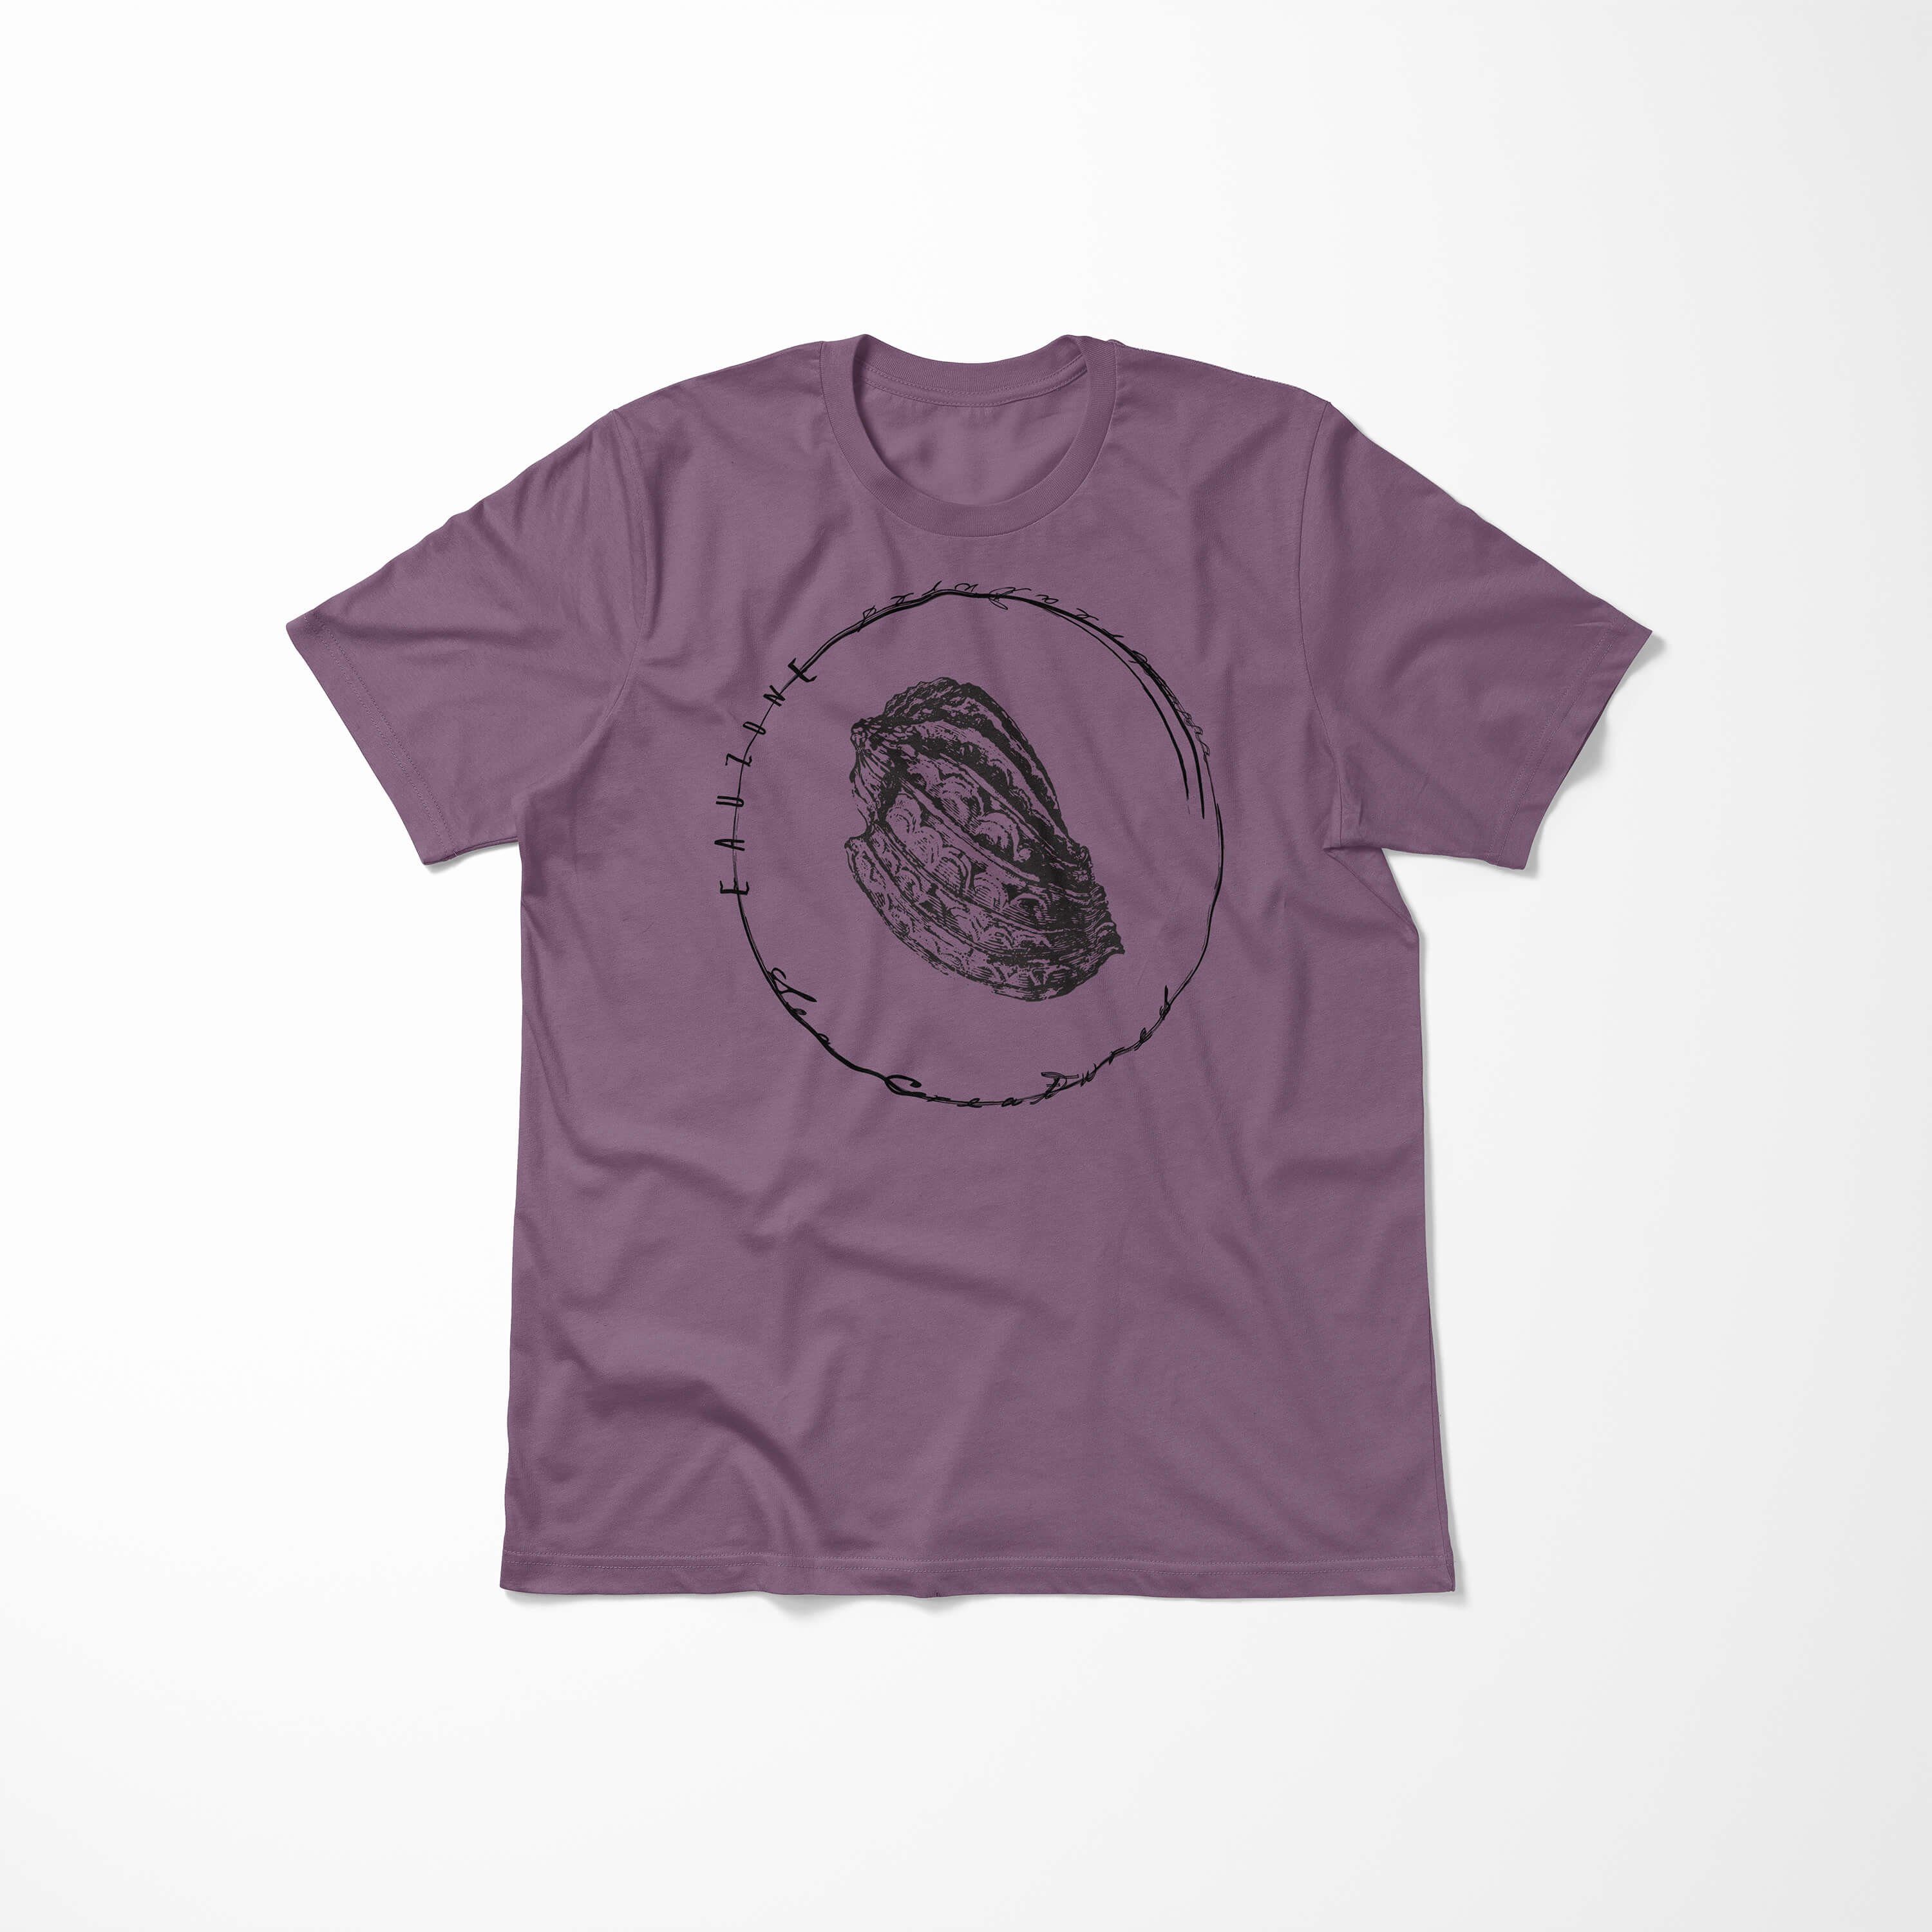 Struktur Shiraz und - Sea Art Sinus Sea T-Shirt T-Shirt Creatures, Schnitt Fische / 072 sportlicher feine Tiefsee Serie: